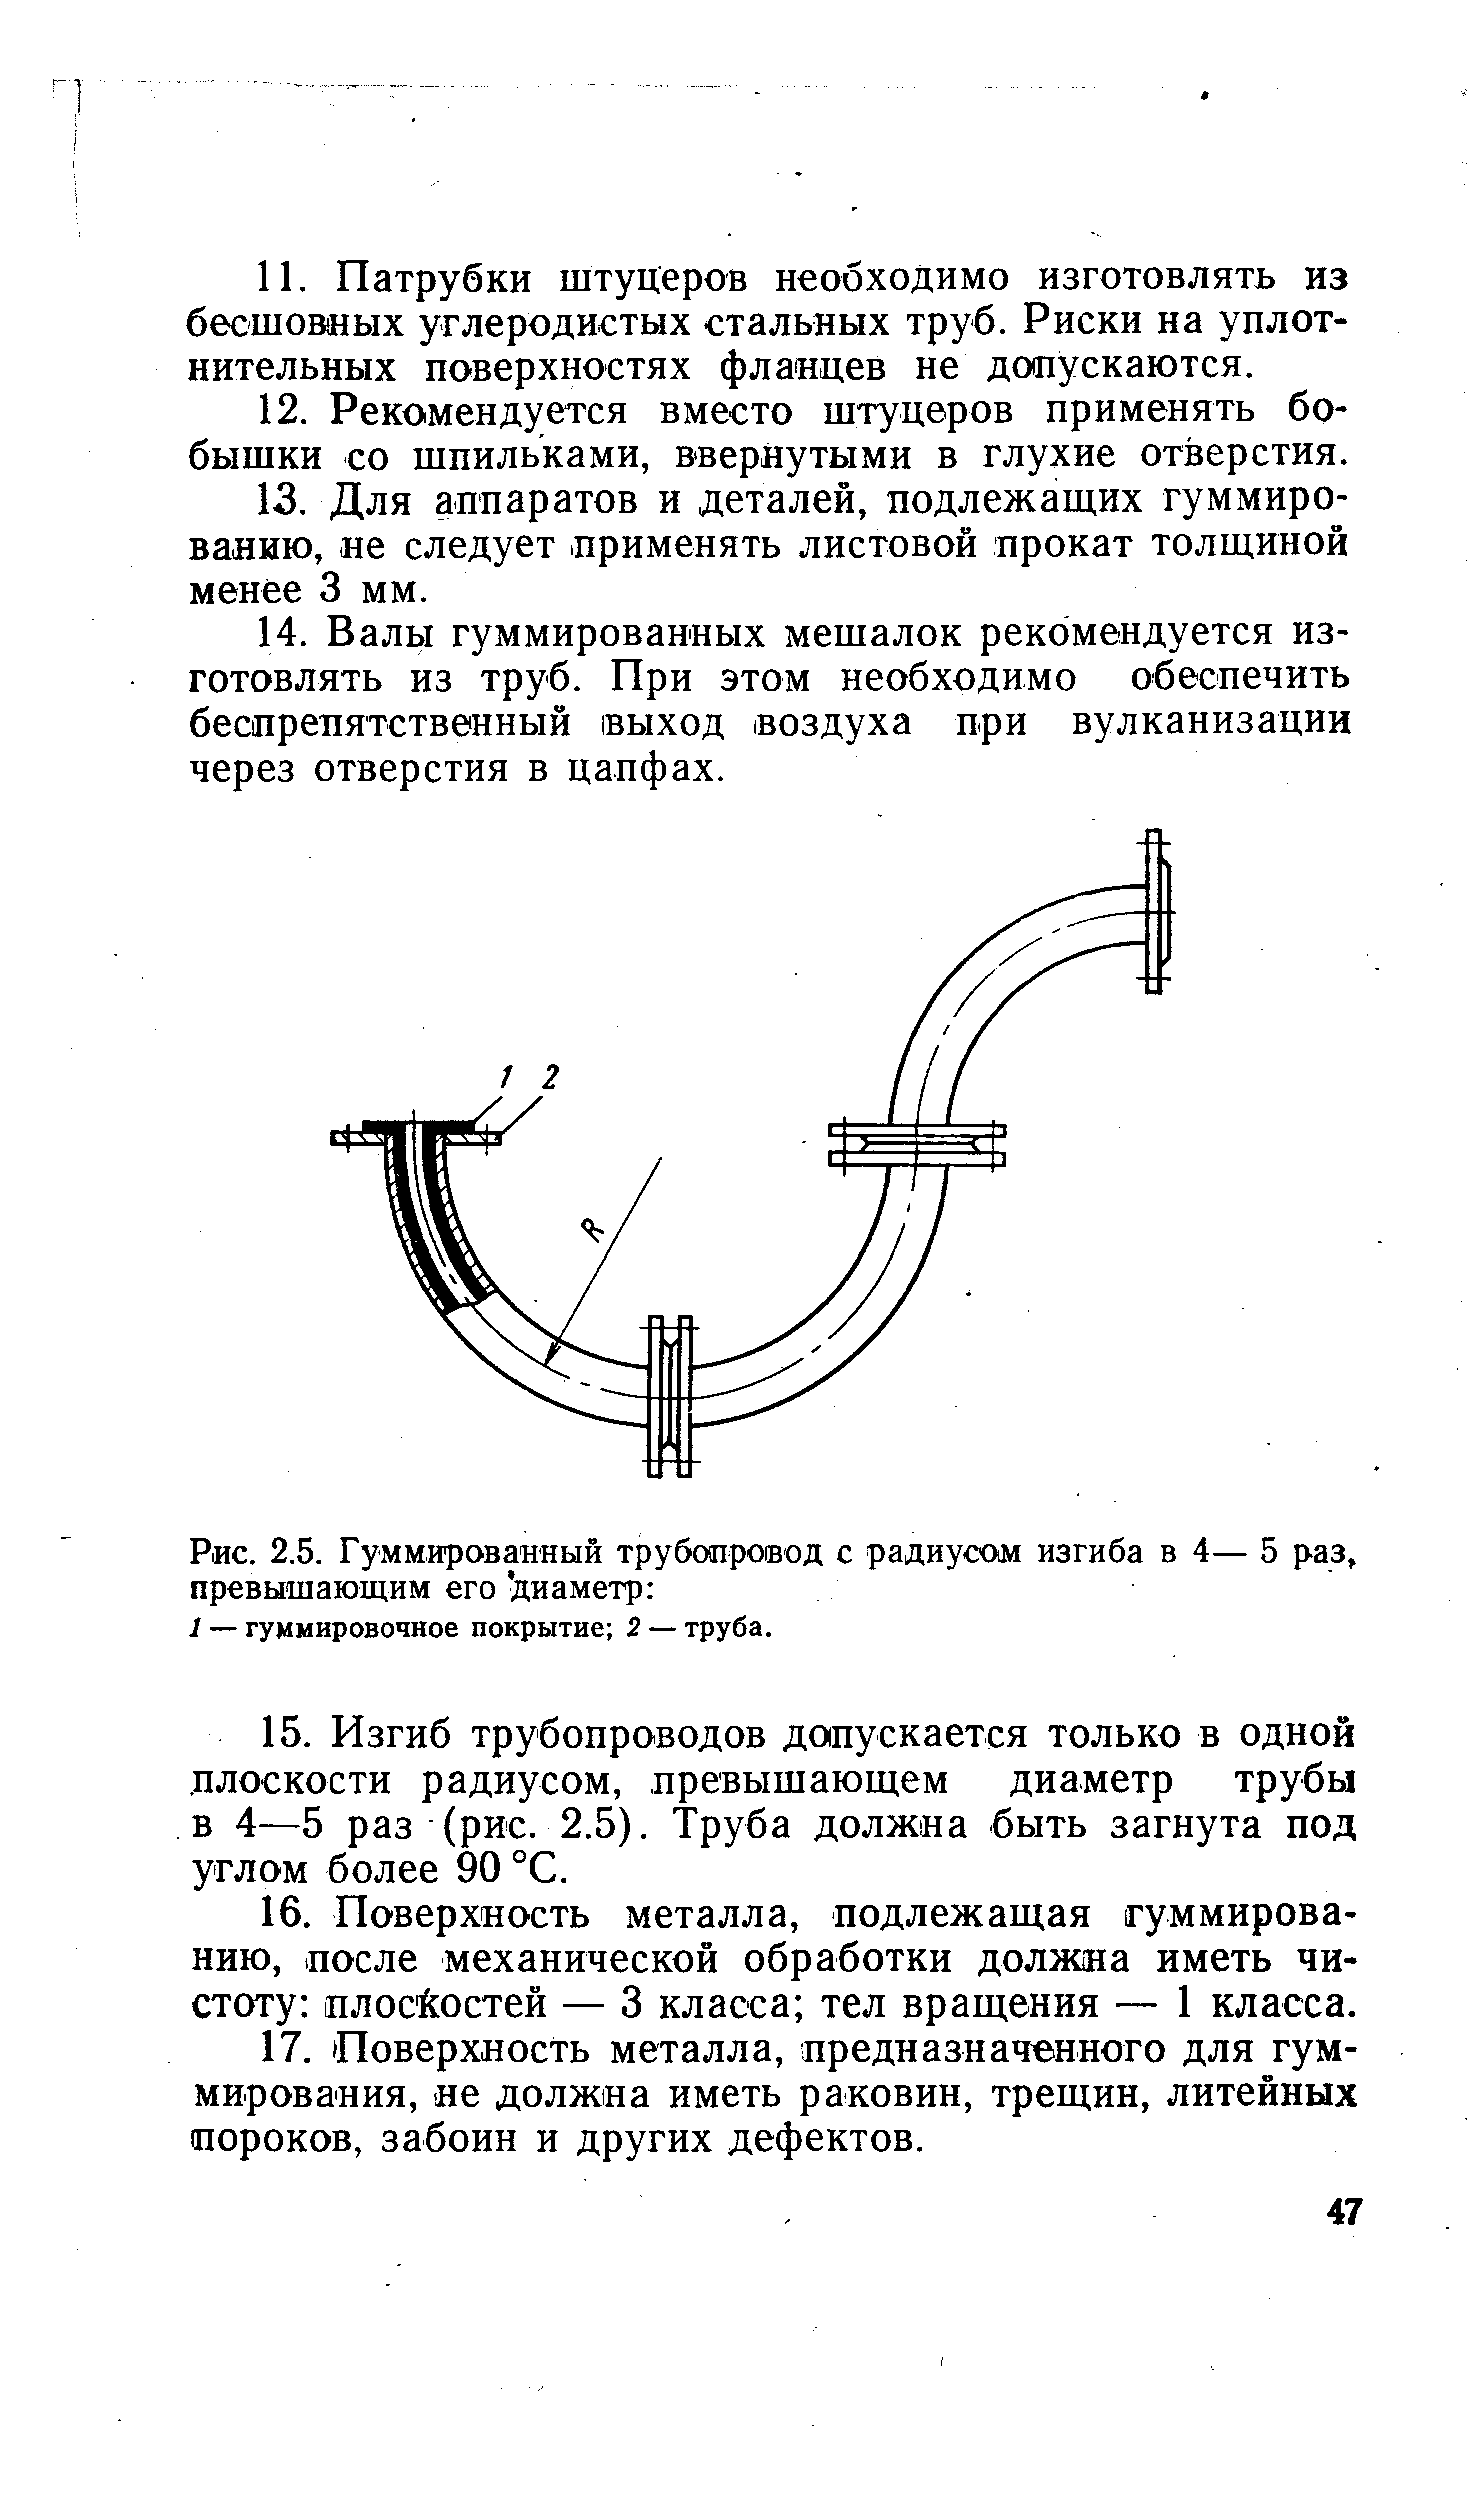 Рис. 2.5. Гуммированный трубопровод с <a href="/info/737879">радиусом изгиба</a> в 4— 5 раз, превышающим его диаметр 
